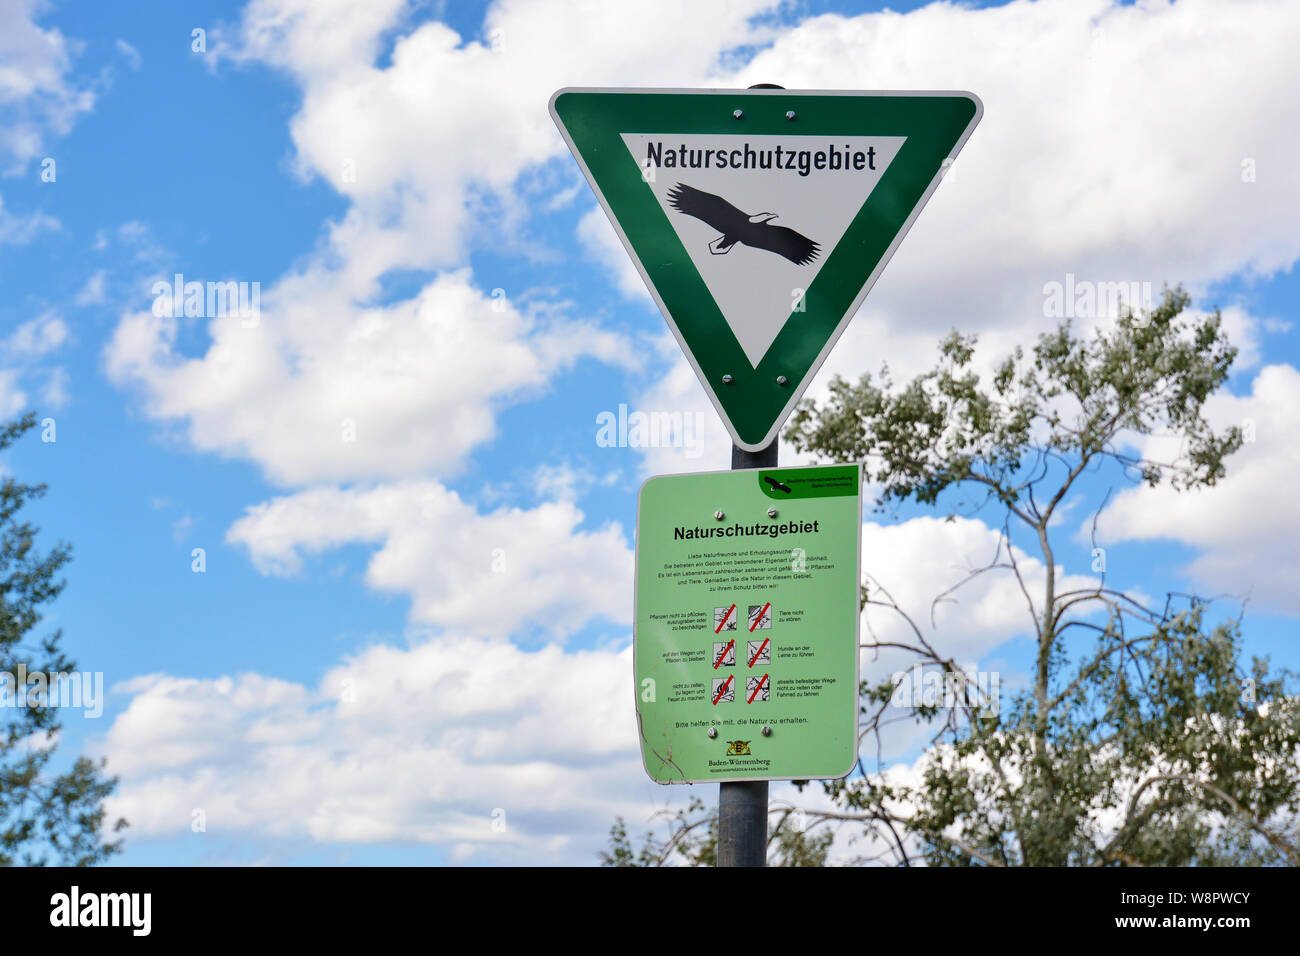 Grünes Schild mit Adler und mit Verhaltensregeln für Deutsche Naturschutzgebiet, geschützten Bereich innerhalb Deutschlands Bundesnaturschutzgesetz Stockfoto